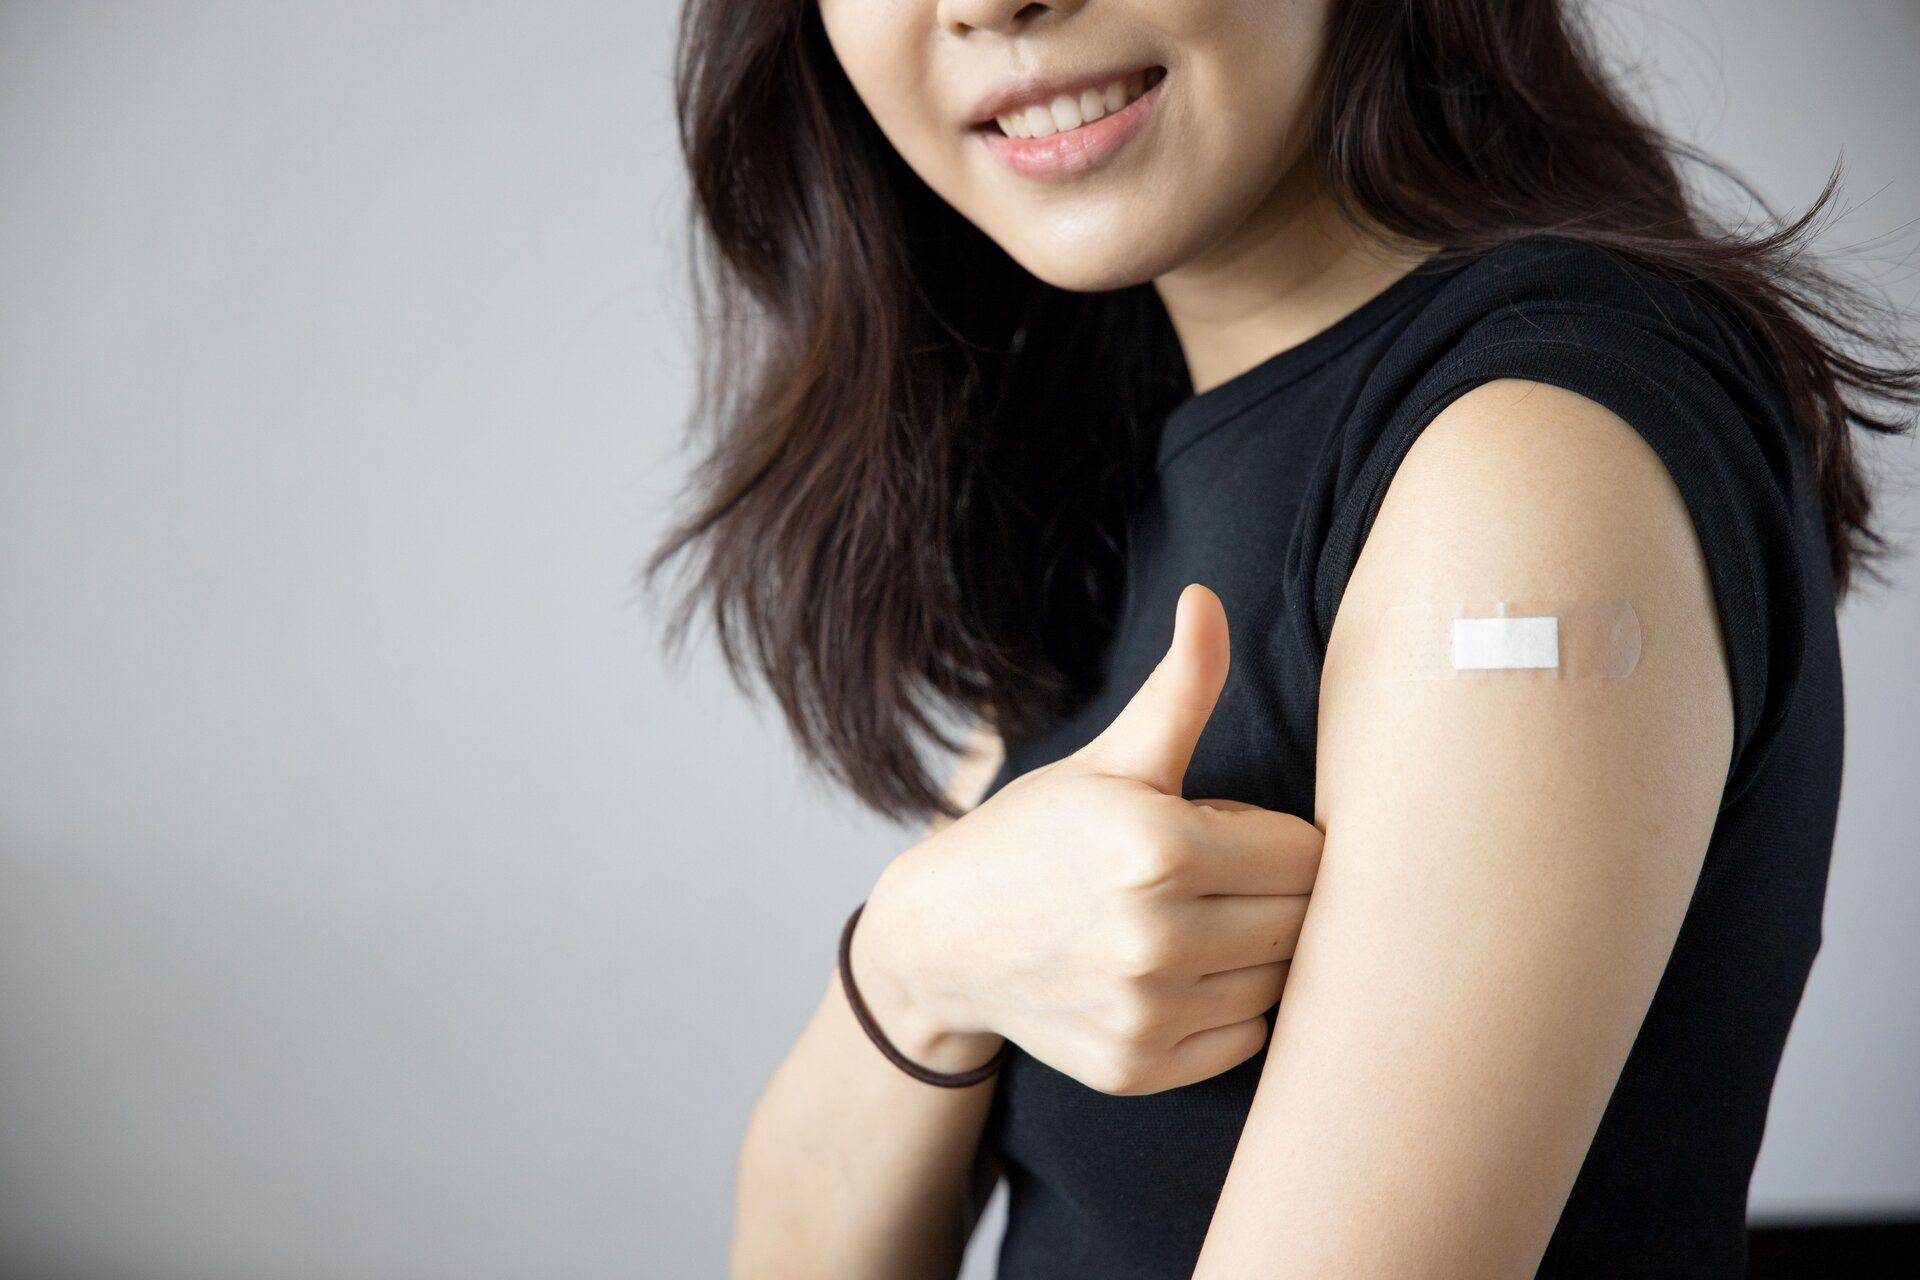 woman got a flu vaccine in hong kong